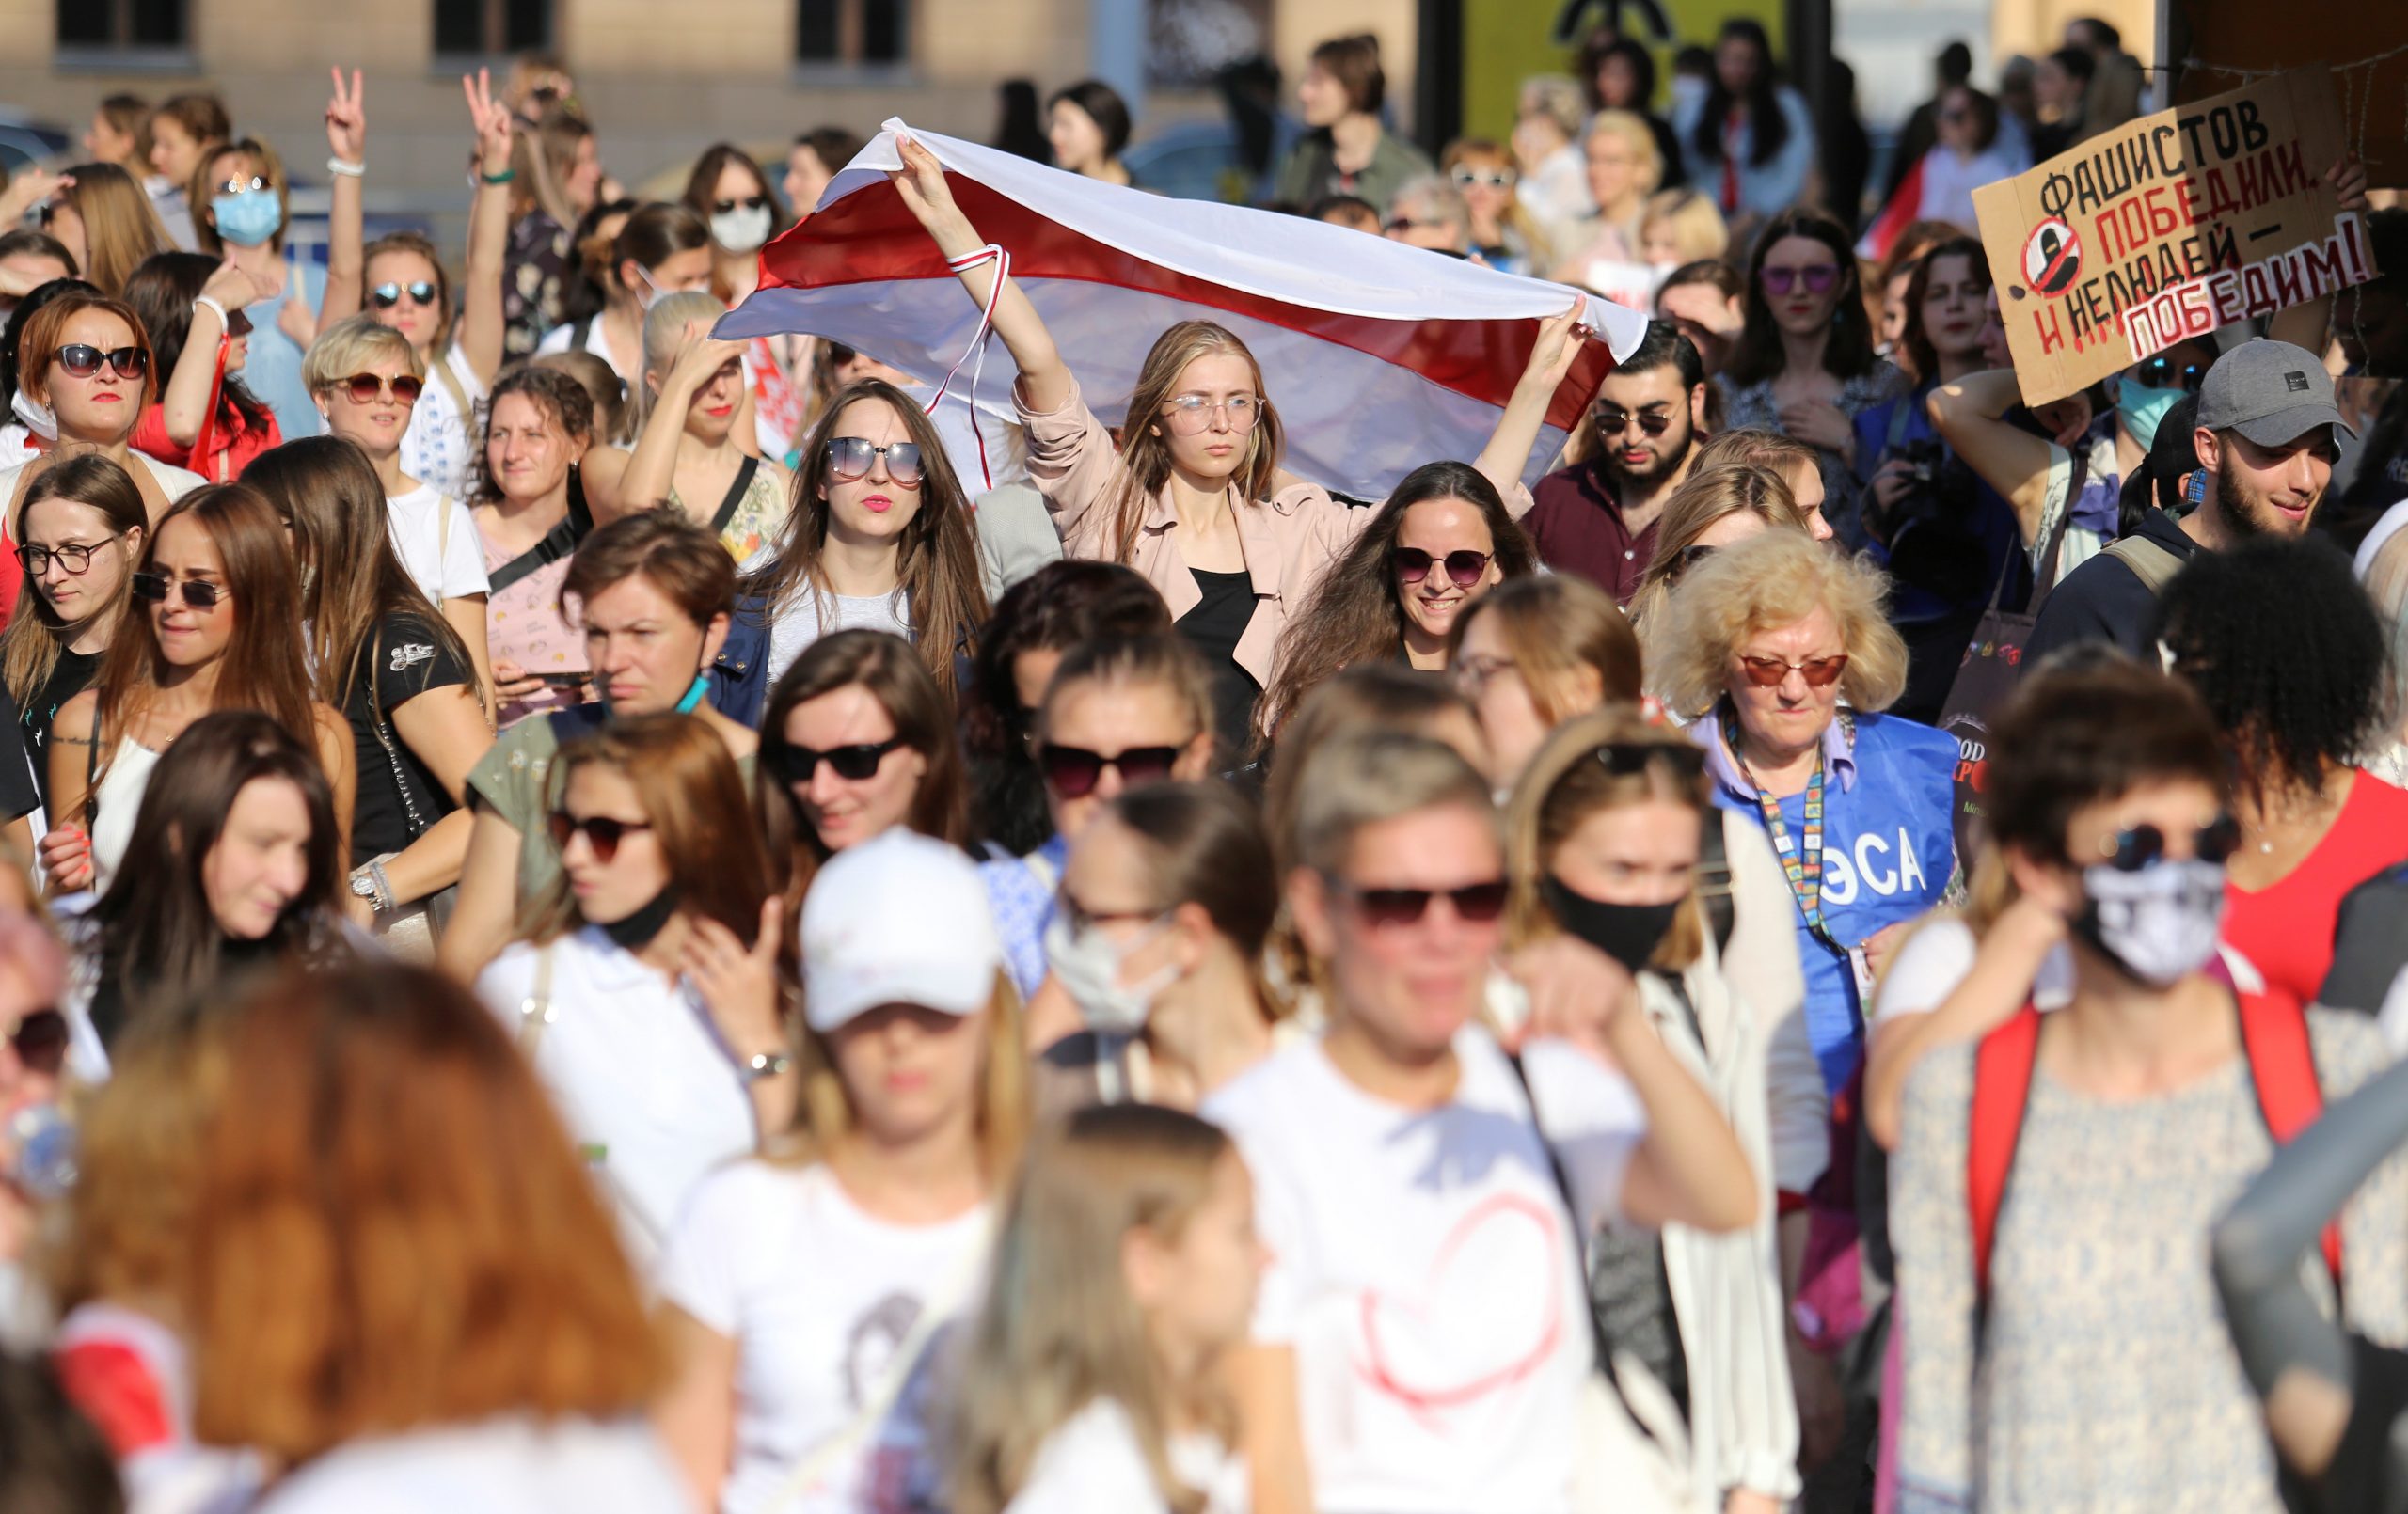 По оценкам СМИ, в акции приняли участие не менее 2 тыс. девушек и женщин. Фото Tut.By via REUTERS/Scanpix/Leta